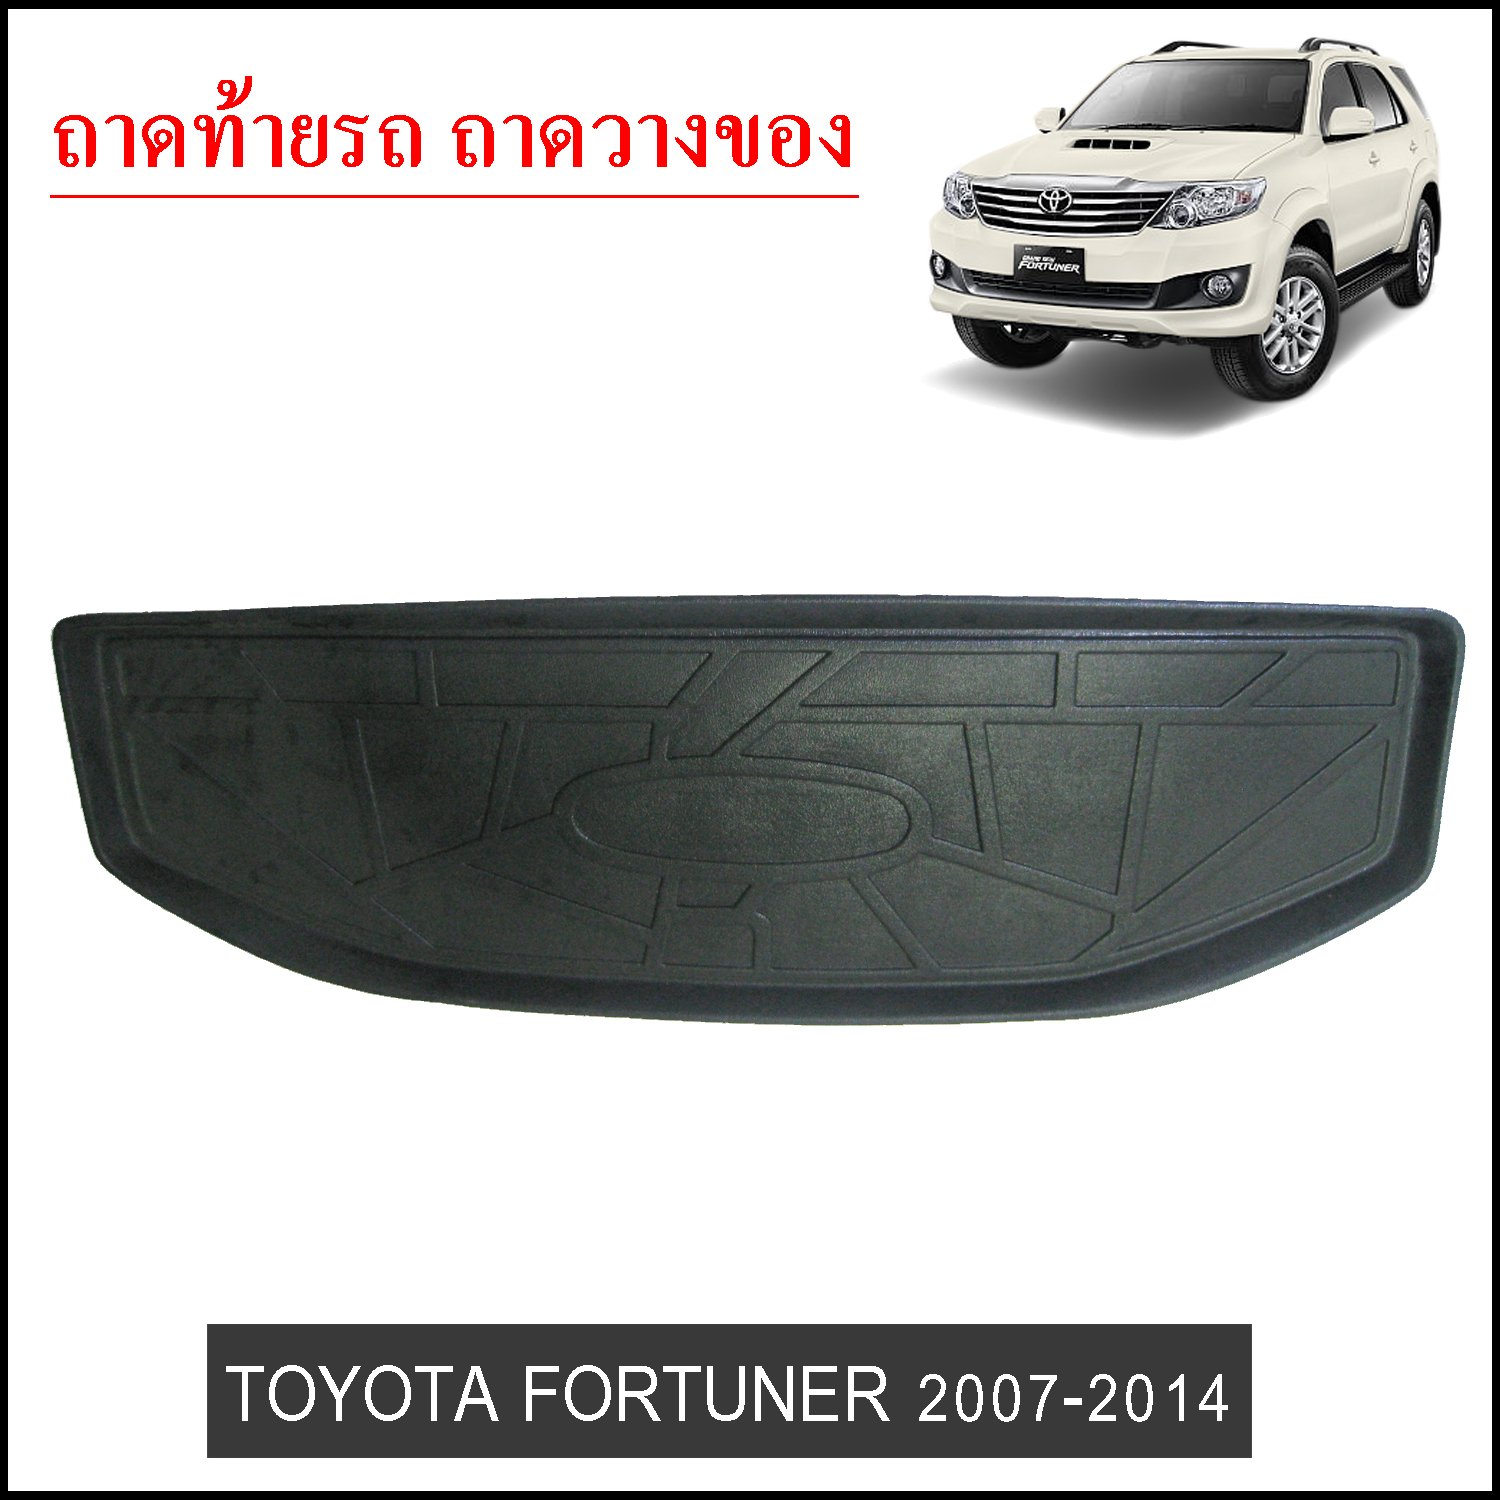 ถาดท้ายวางของ Toyota Fortuner